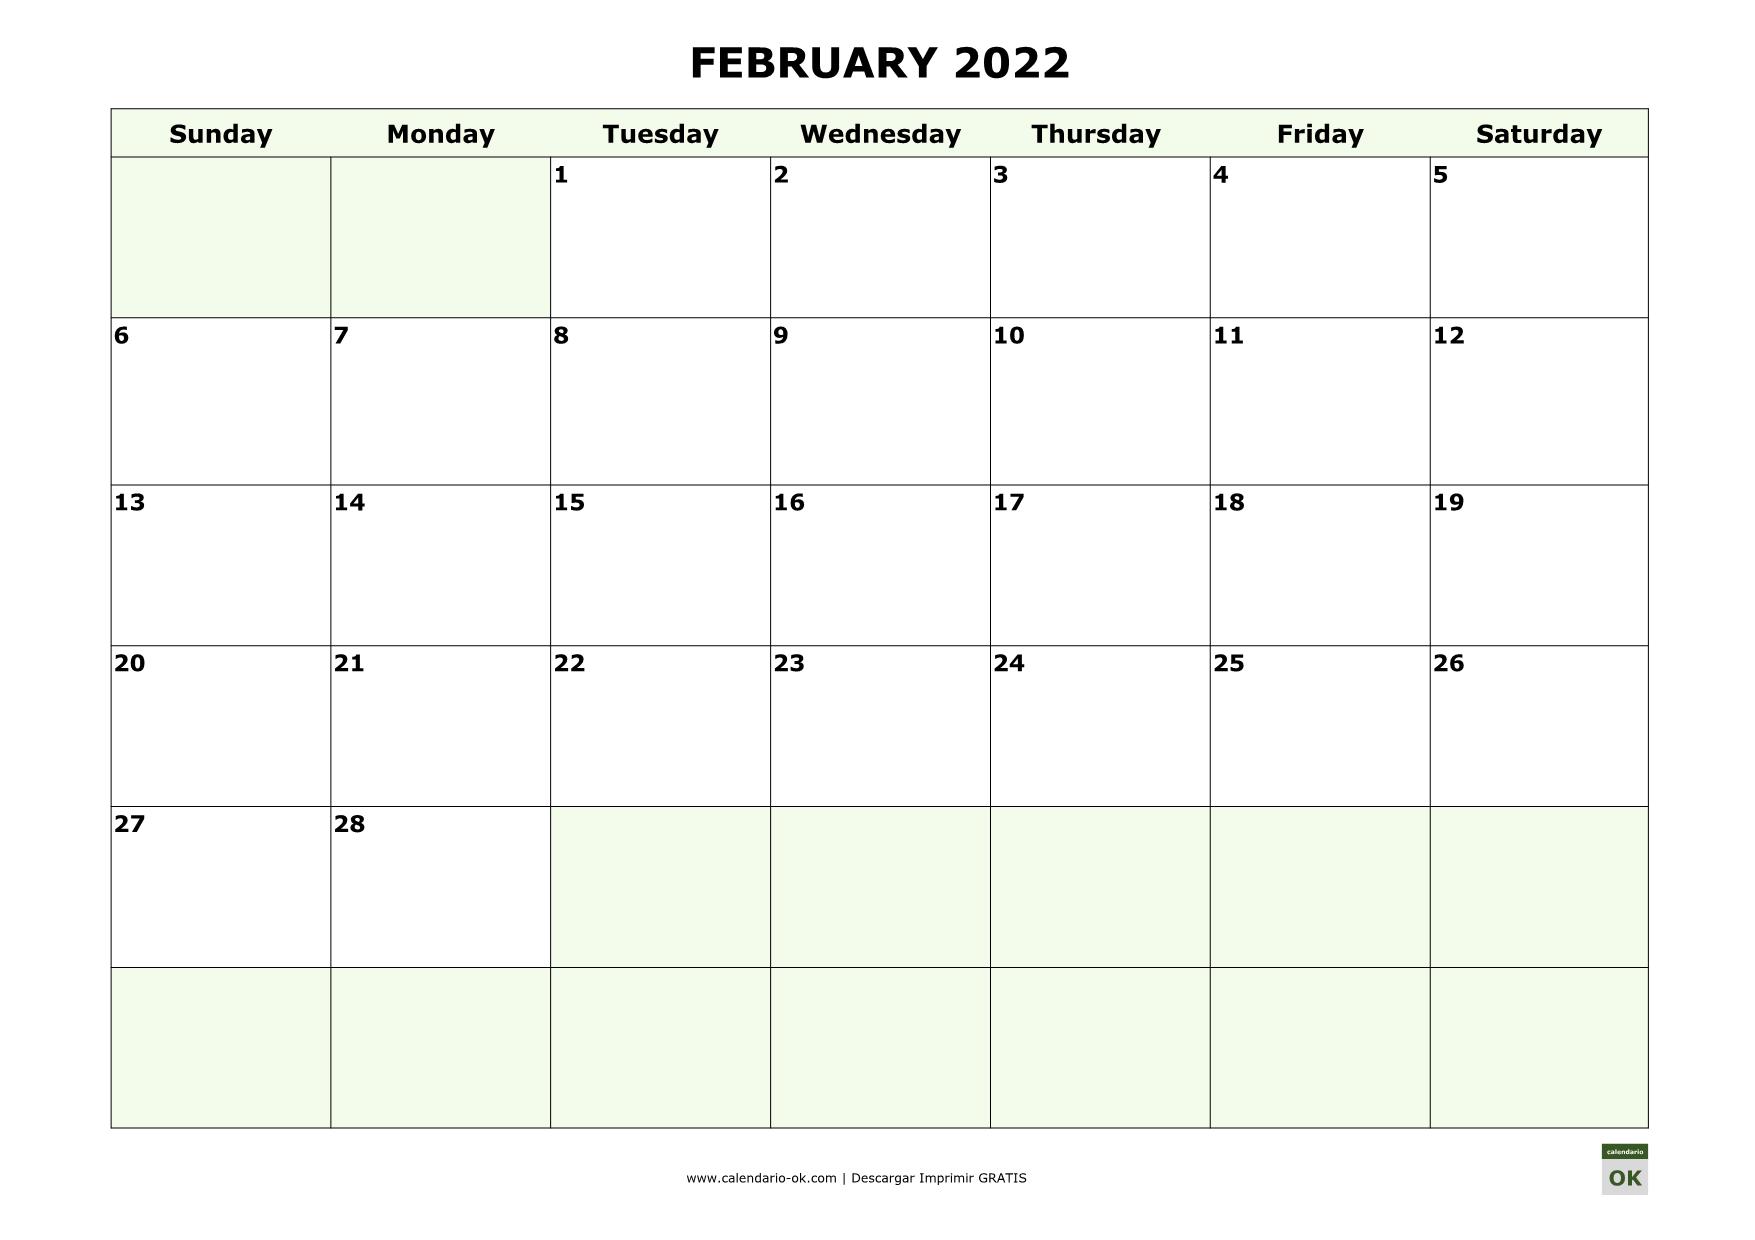 FEBRERO 2022 calendario en INGLES empieza por DOMINGO